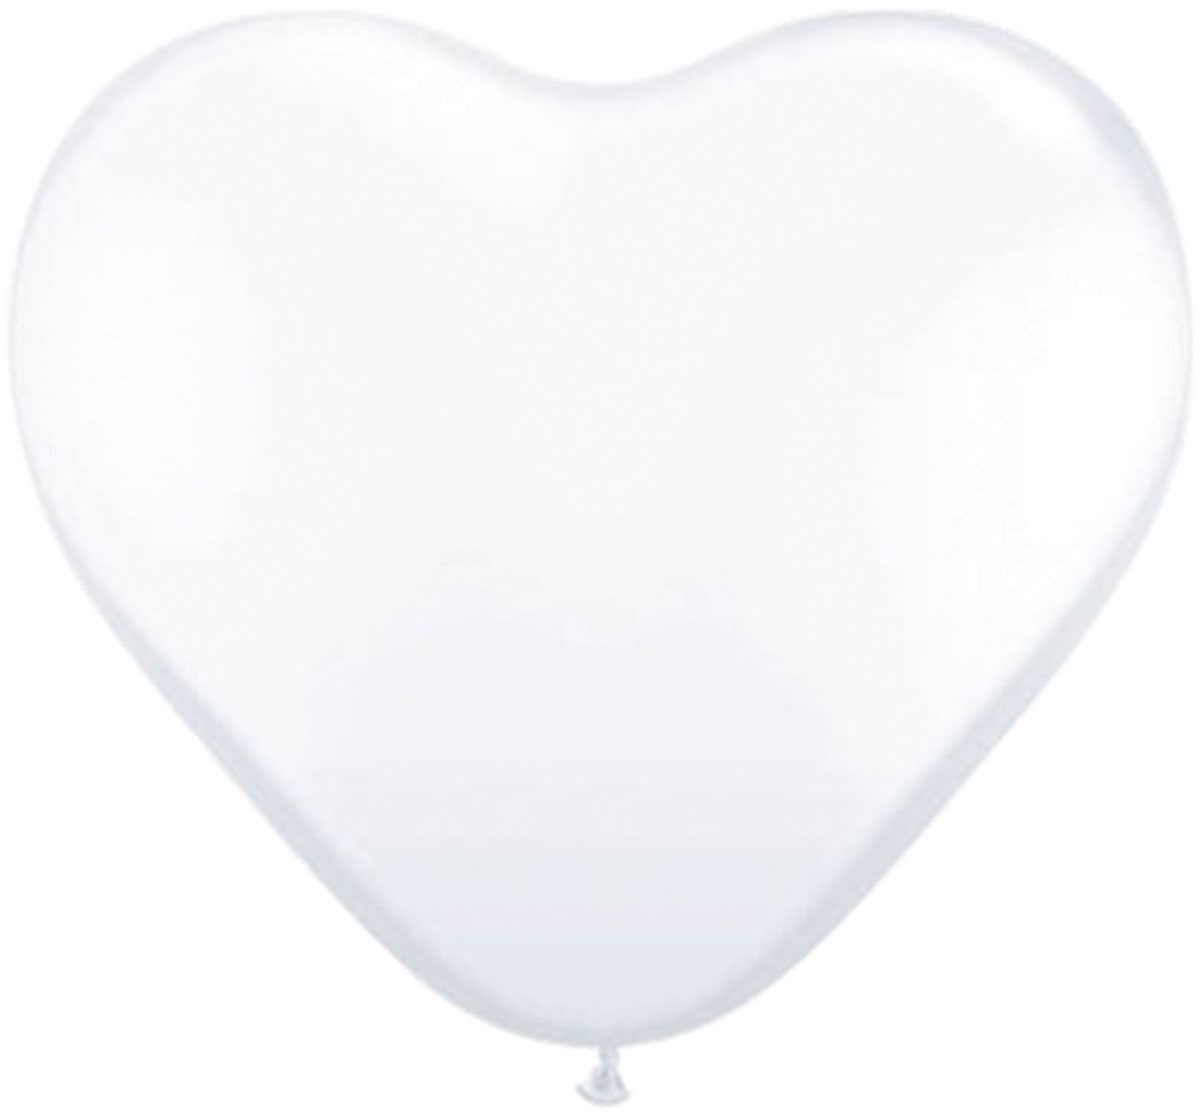 Witte hartvormige ballonnen 100 stuks